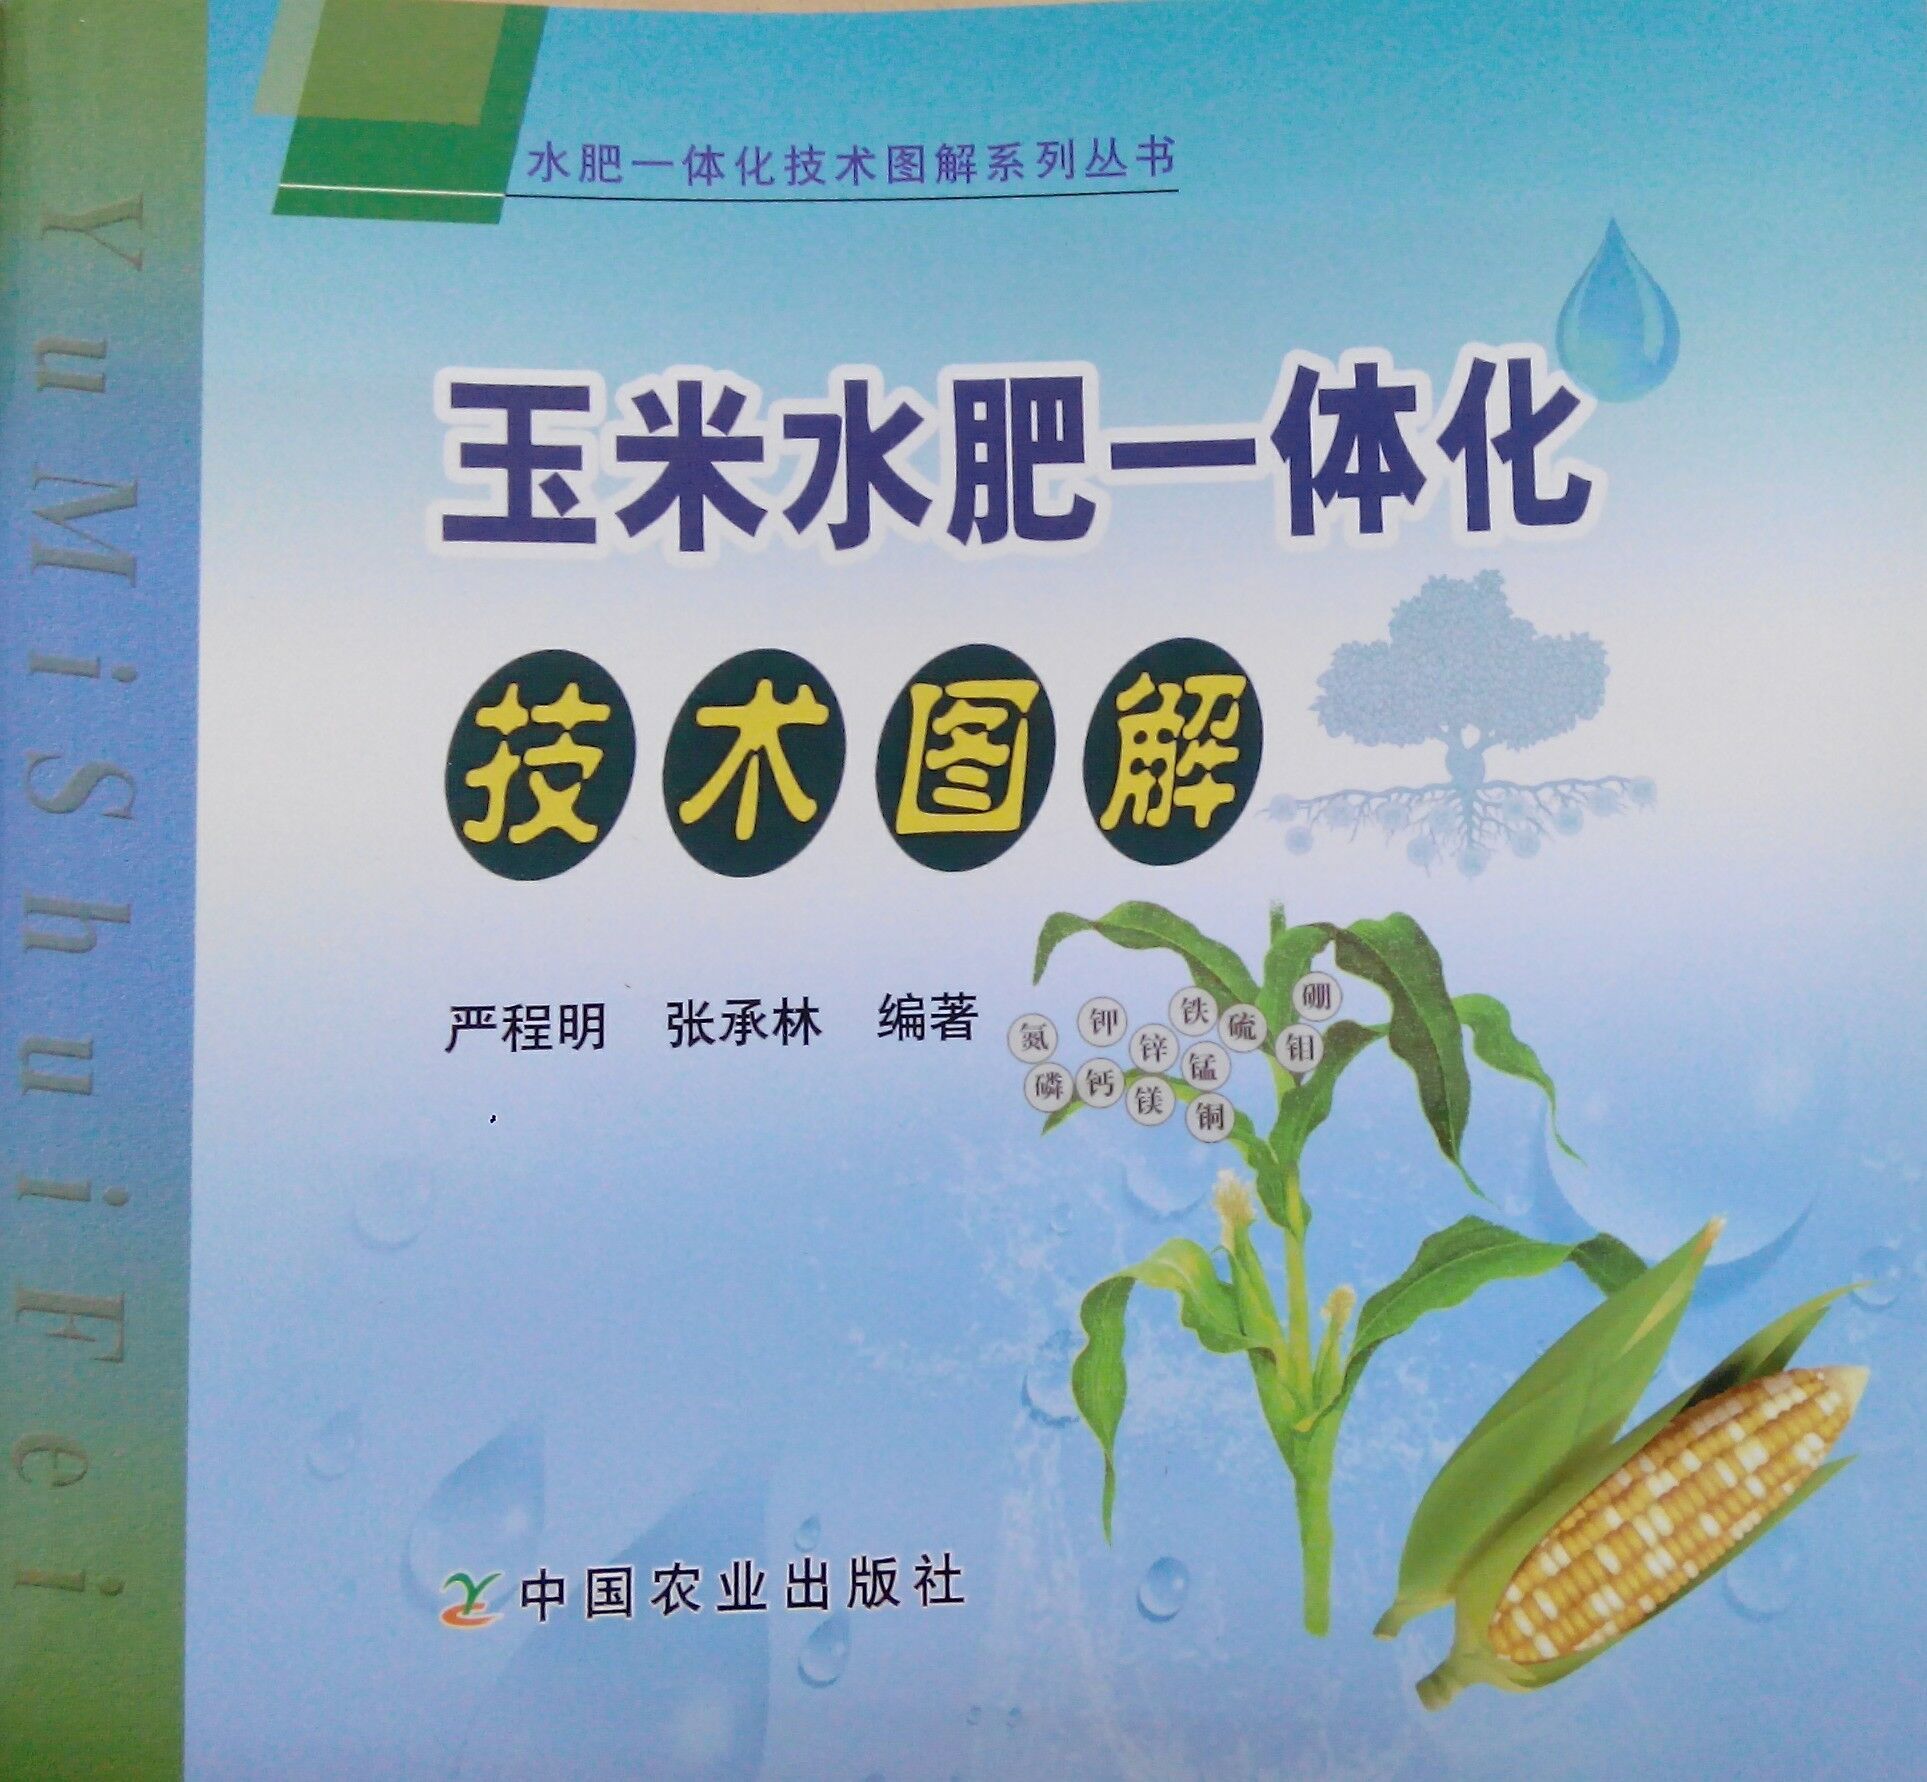 《玉米水肥一体化技术图解》书籍推荐